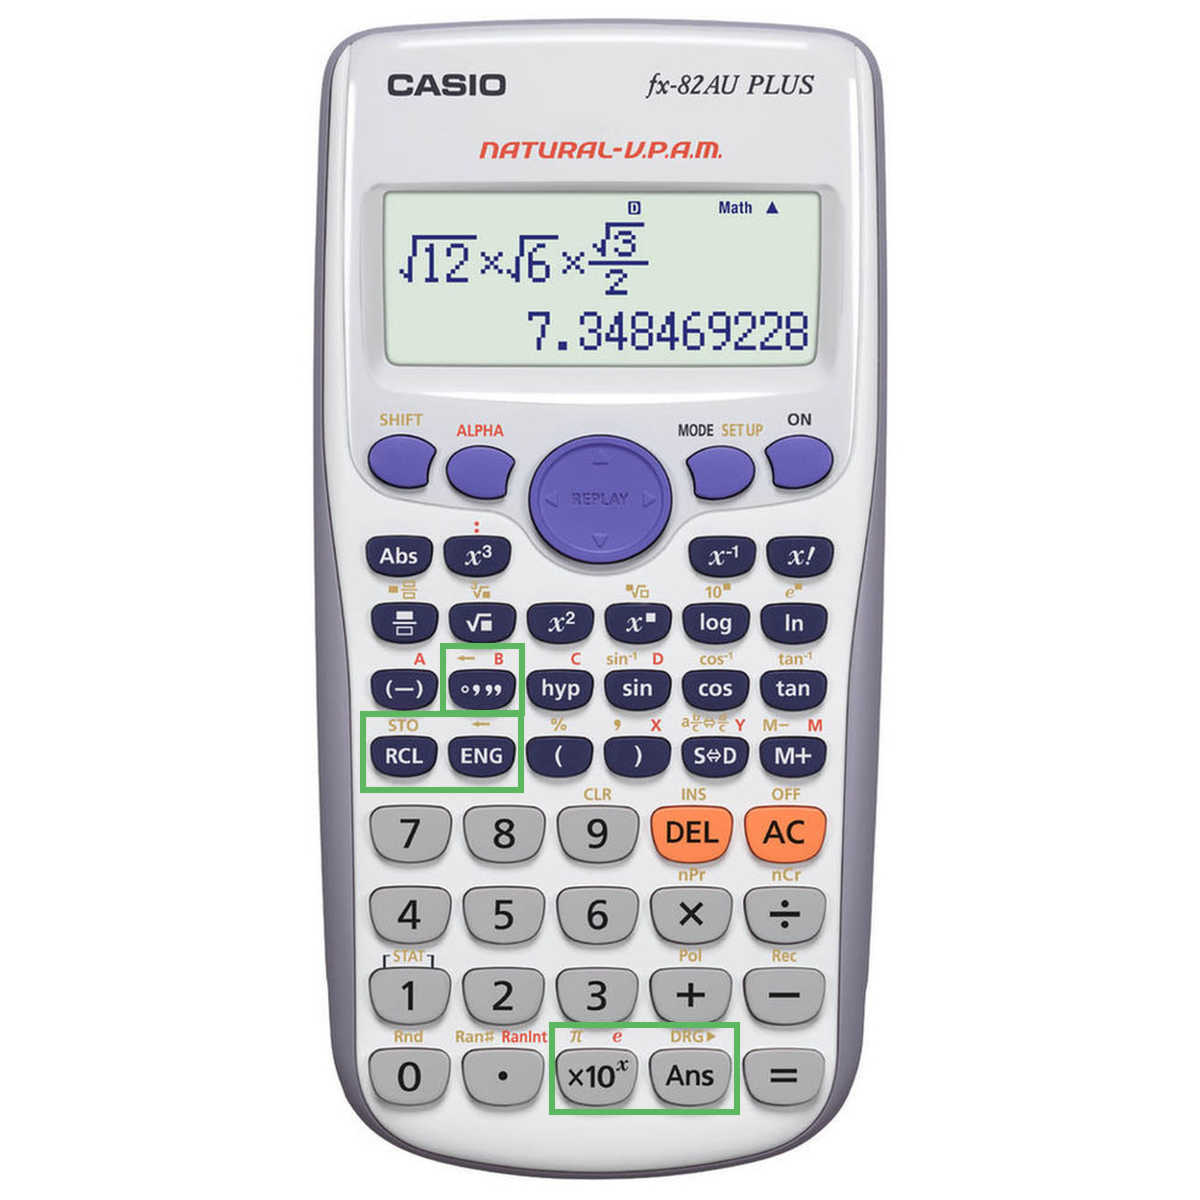 fx-82AU PLUS II Casio calculator - HSC maths calculator